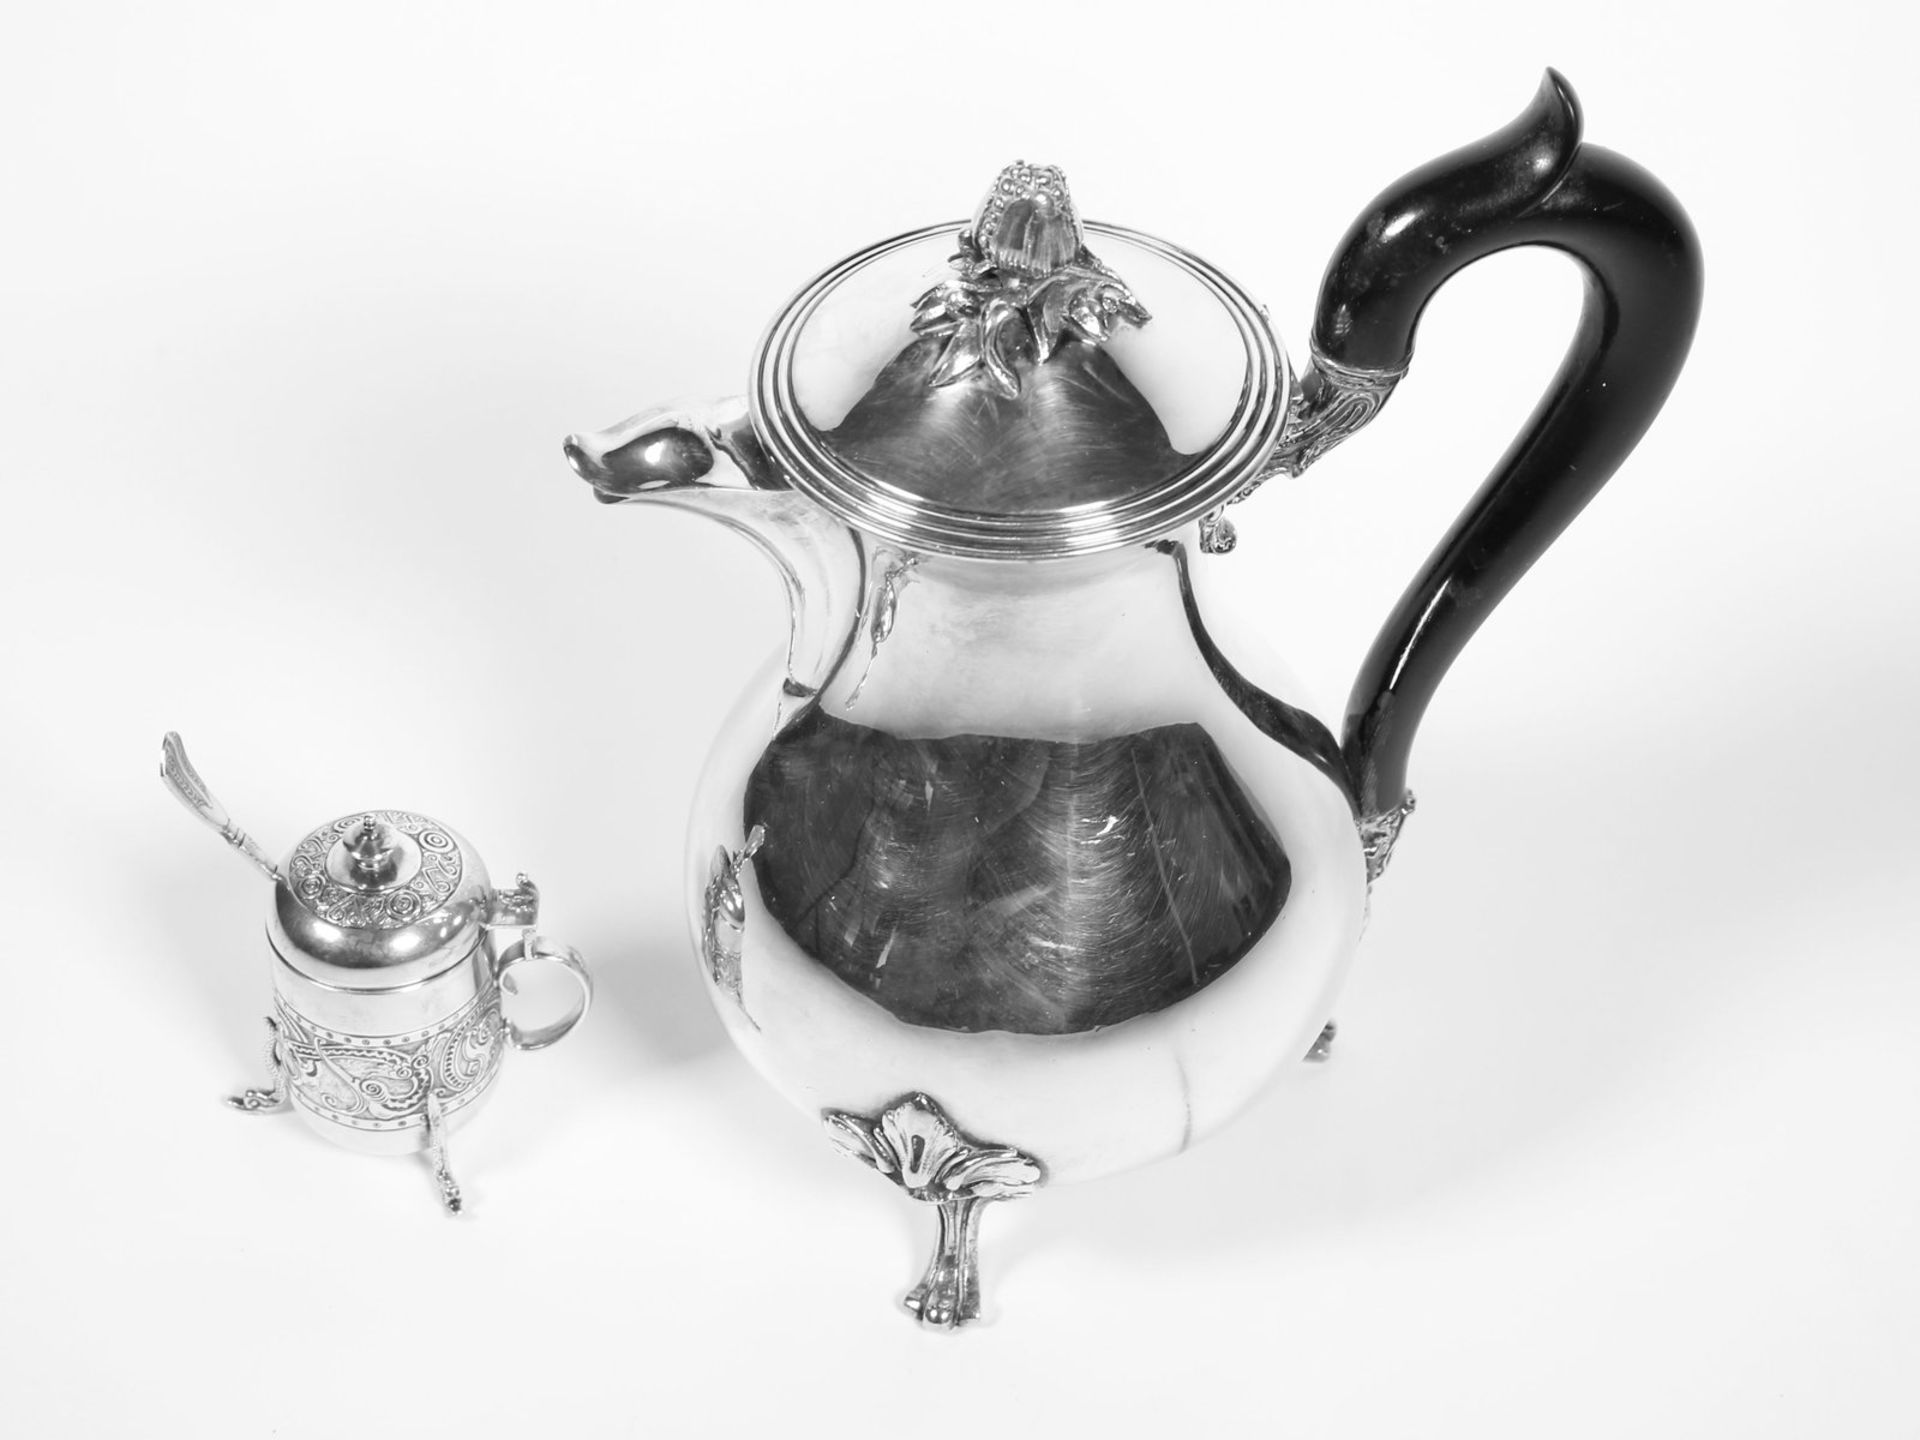 Kanne/Zuckerdose: antike Kaffeekanne - silver plated, dazu dekorativ verzierte silberne